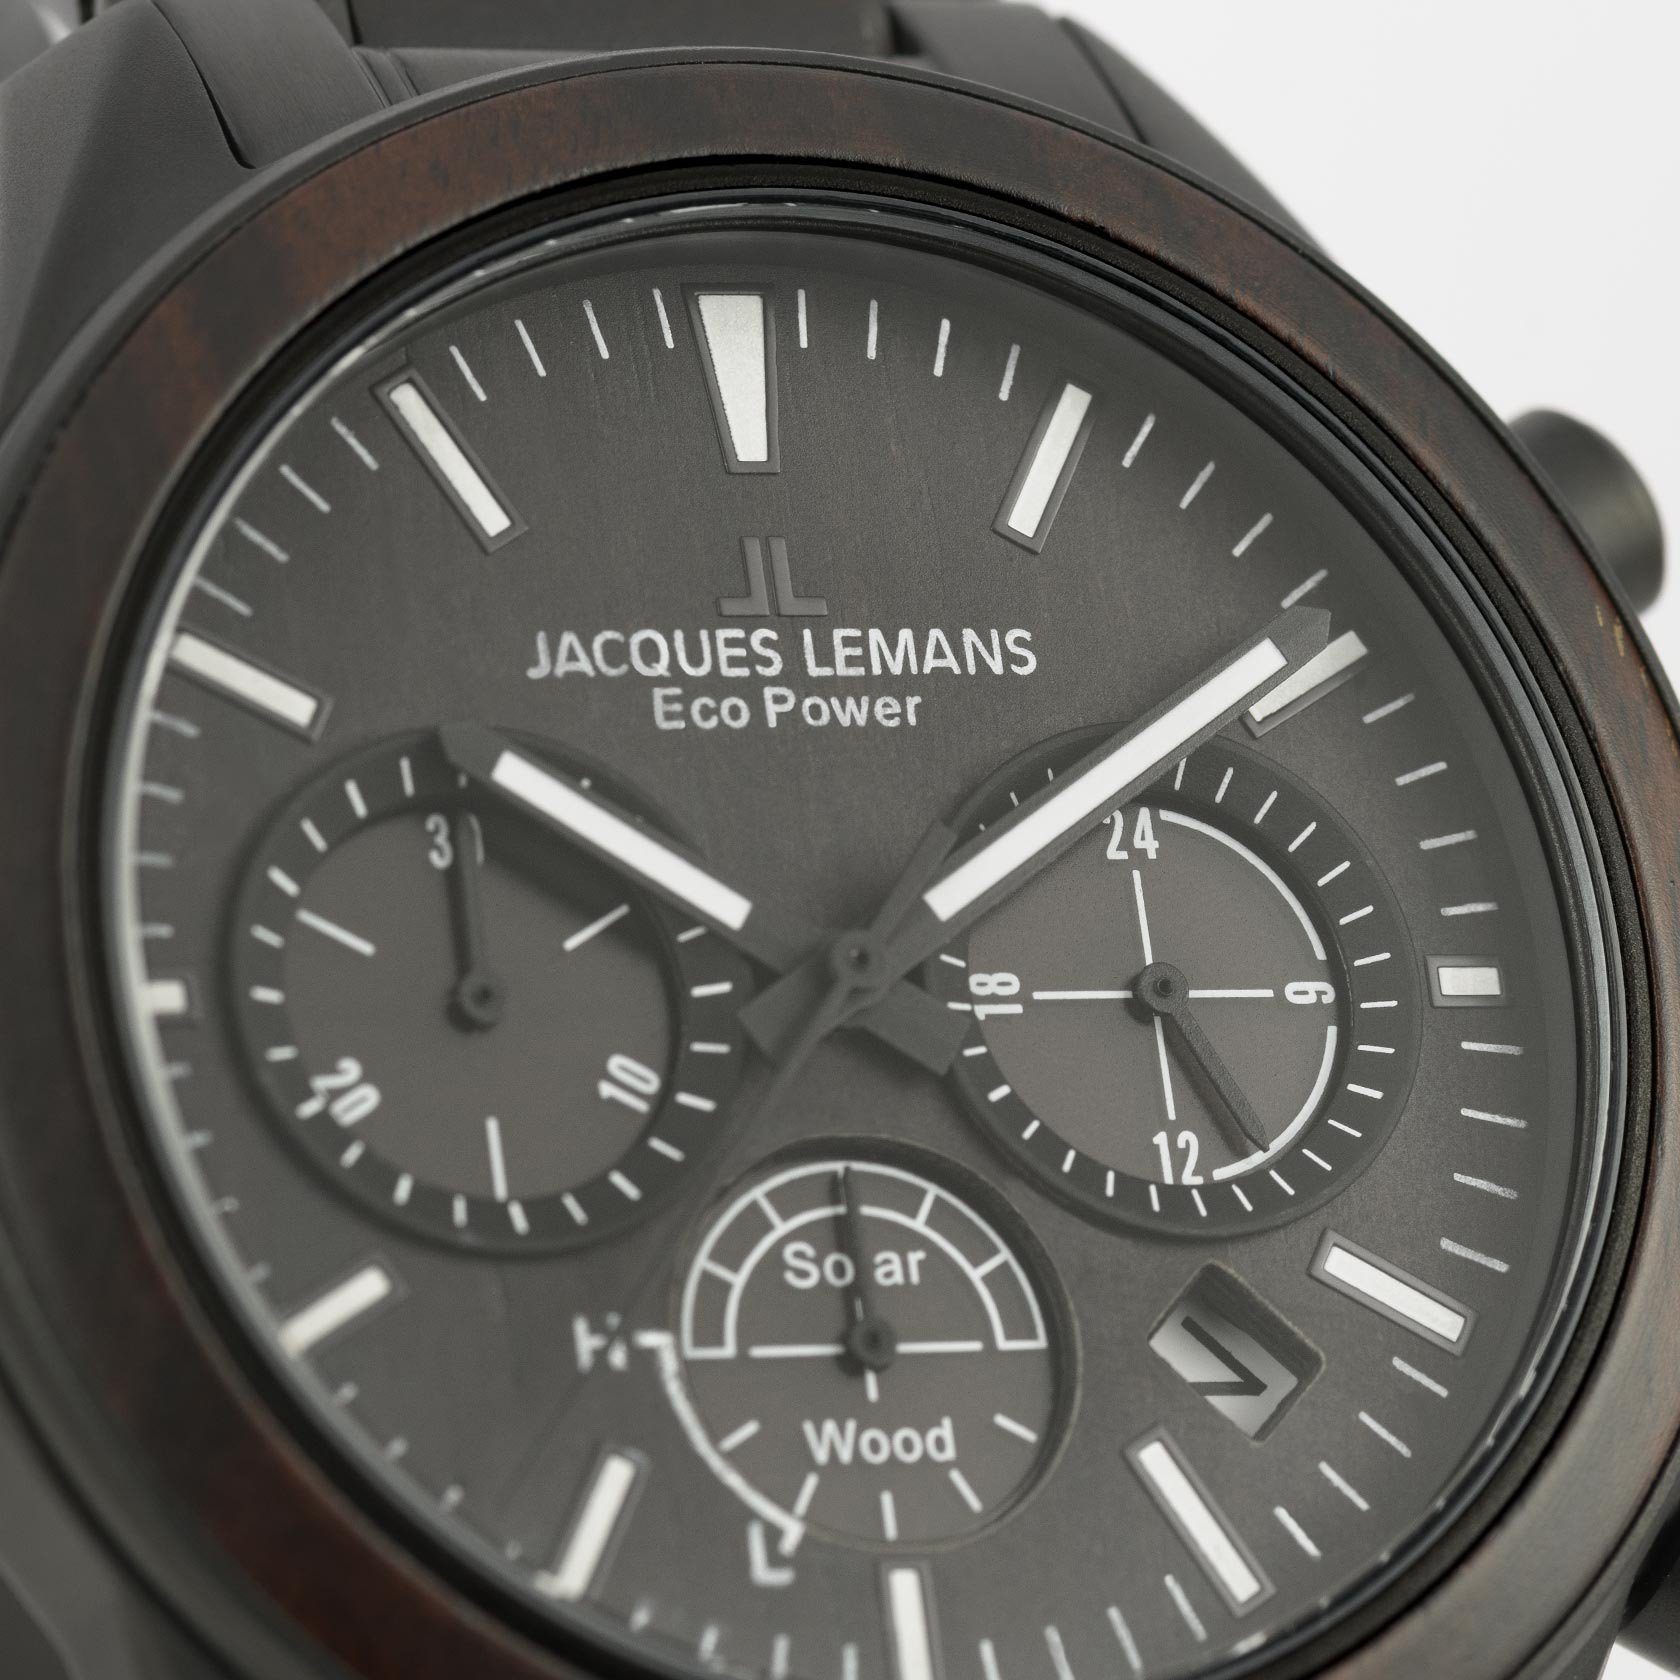 Jacques Lemans Power schwarz Chronograph Wood, Eco Solar 1-2115M